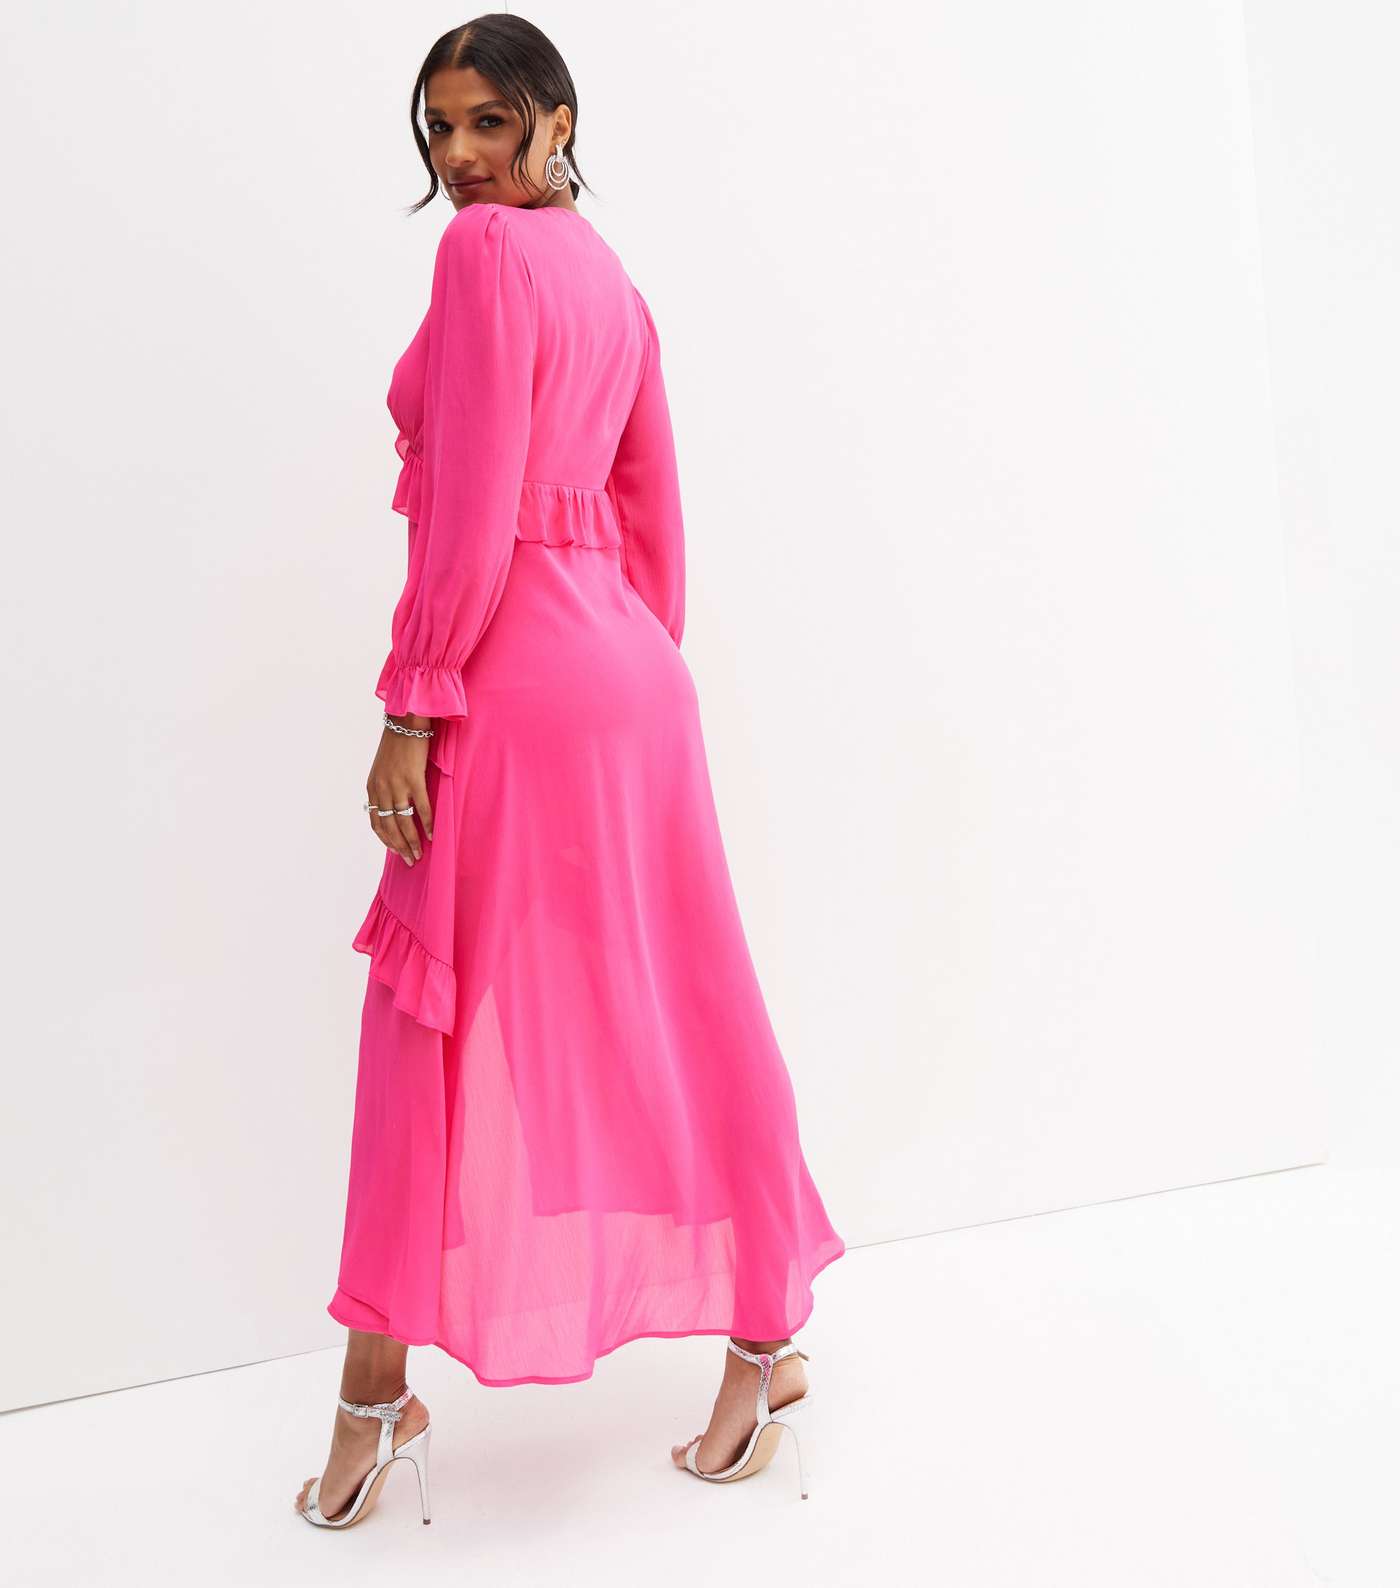 Bright Pink Chiffon Tiered Ruffle Long Sleeve Midi Dress Image 4